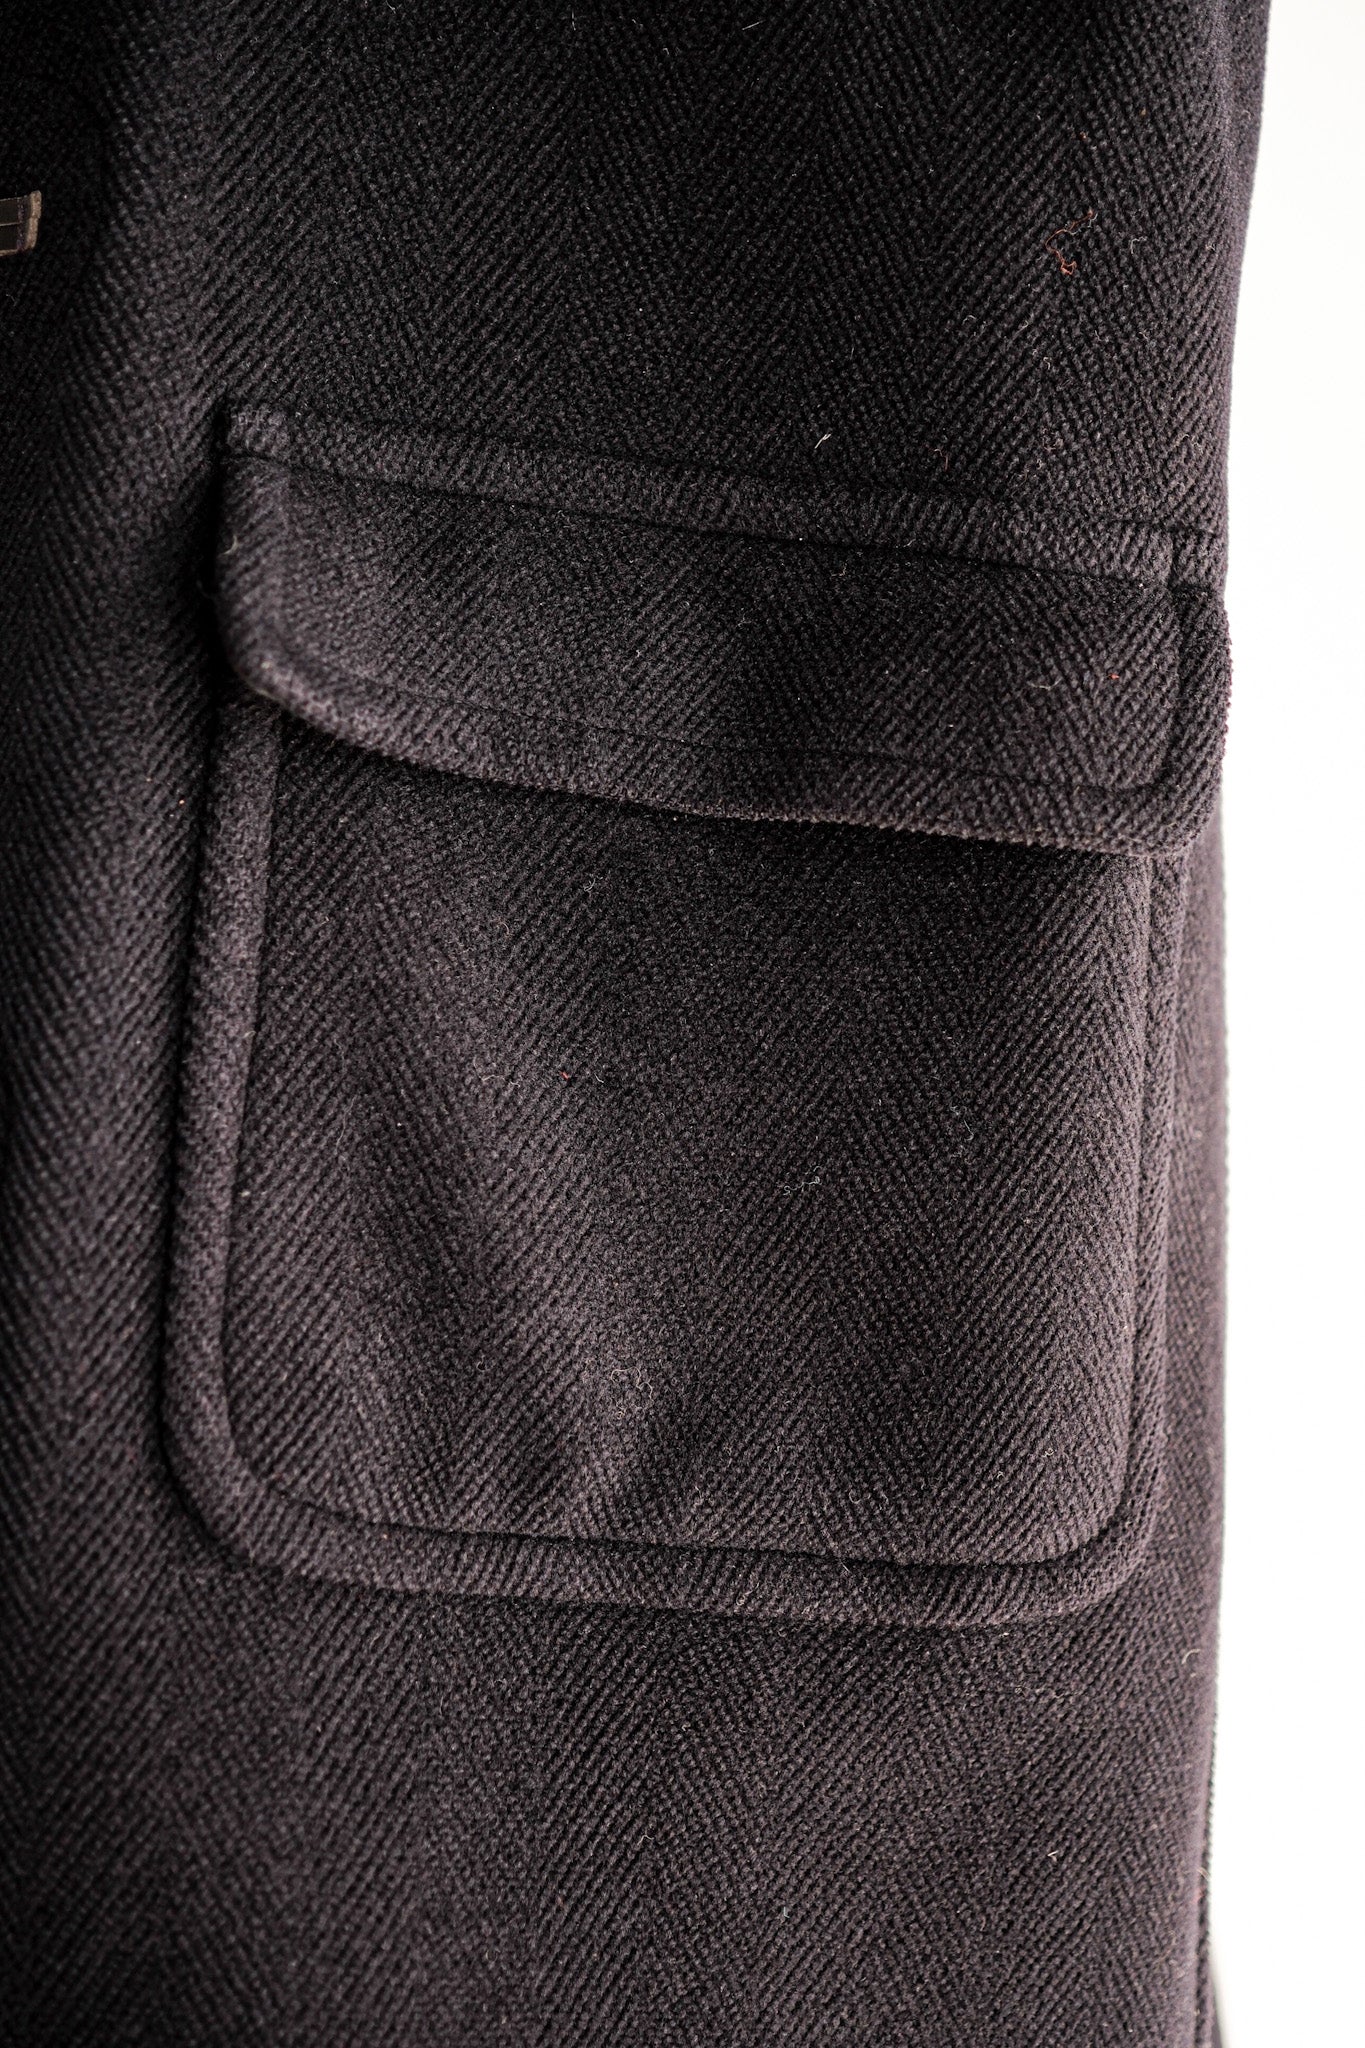 [〜90年代]舊的逆變羊毛行李外套尺寸。42“ Moorbrook”